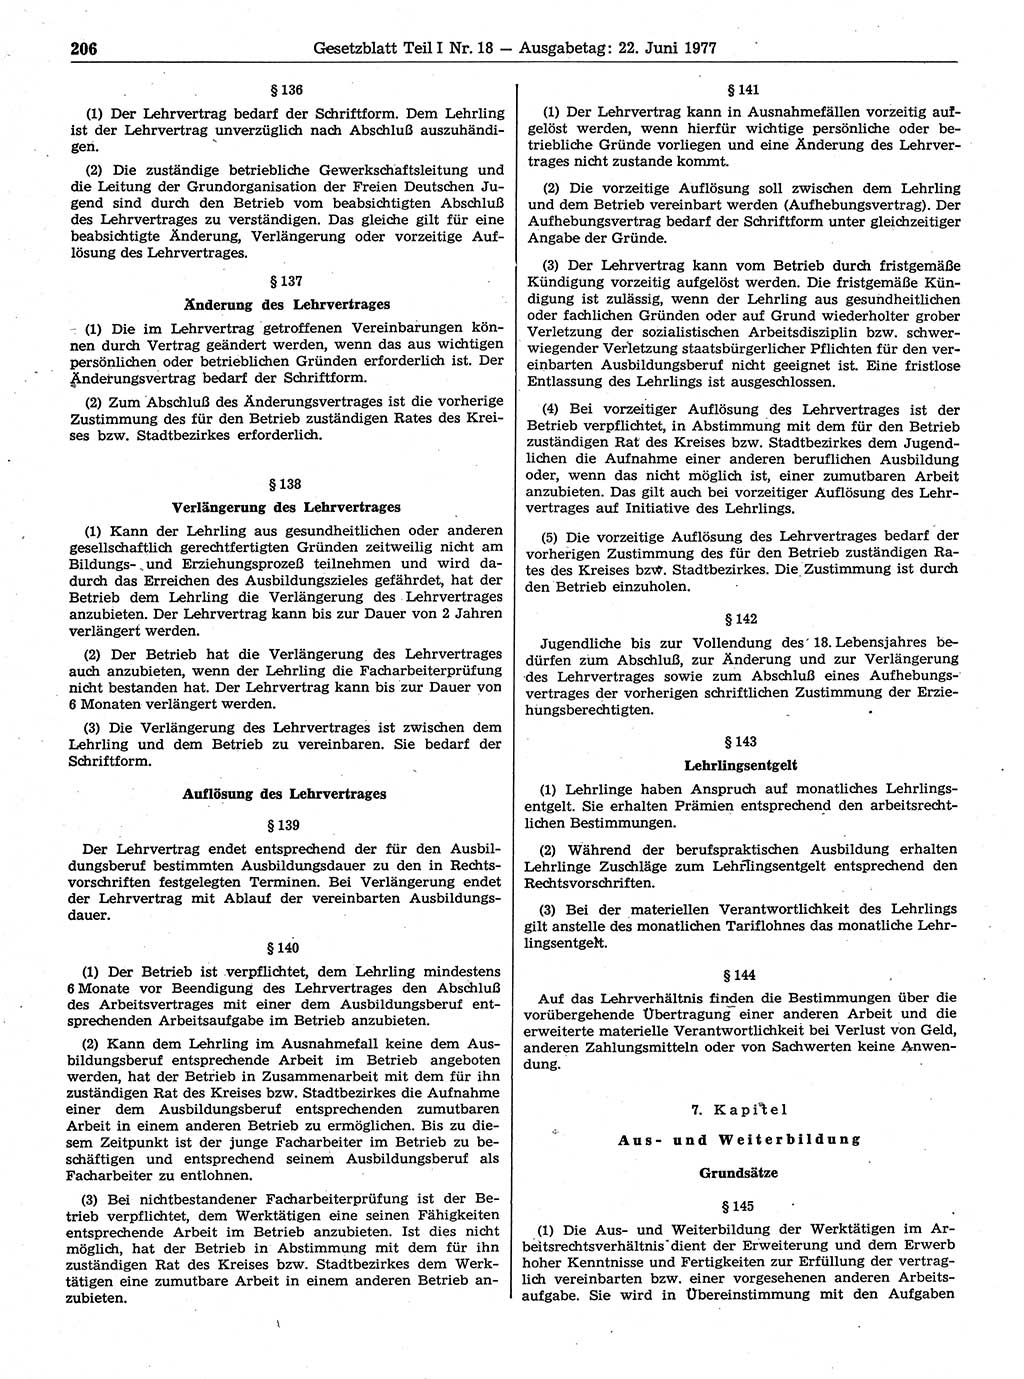 Gesetzblatt (GBl.) der Deutschen Demokratischen Republik (DDR) Teil Ⅰ 1977, Seite 206 (GBl. DDR Ⅰ 1977, S. 206)